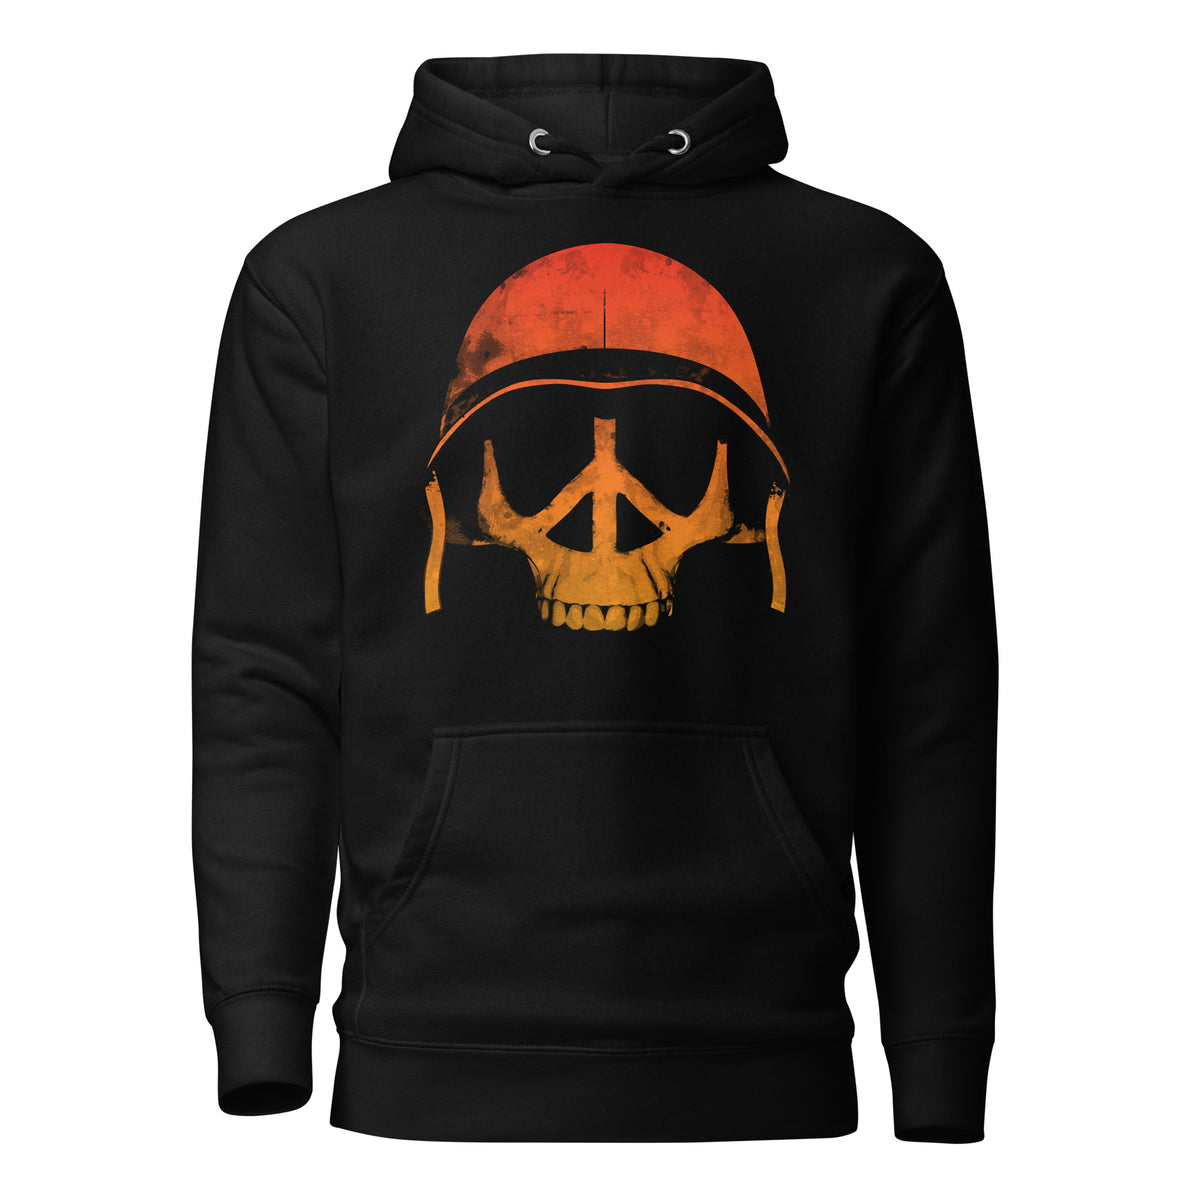 Full Metal Jacket - Peace Skull - Black Hooded Sweatshirt